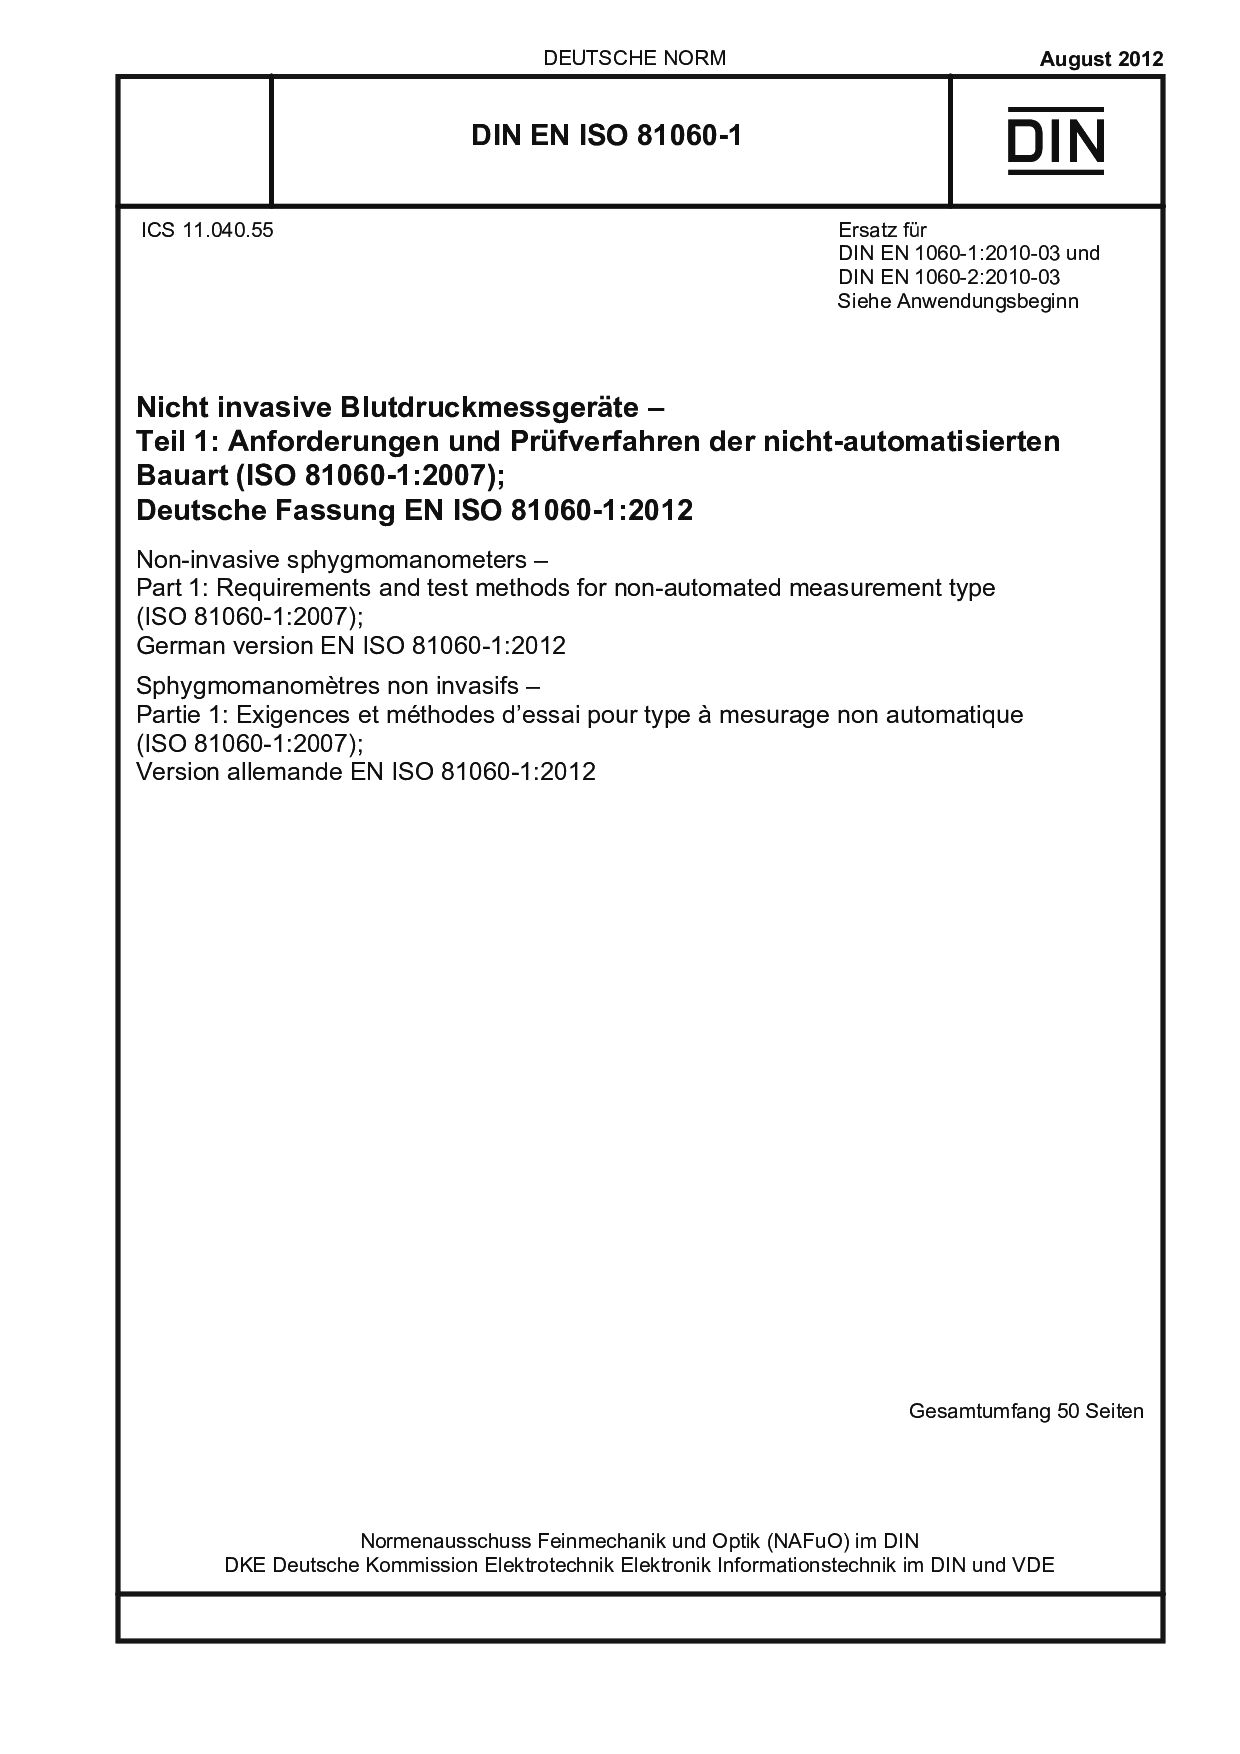 DIN EN ISO 81060-1:2012封面图